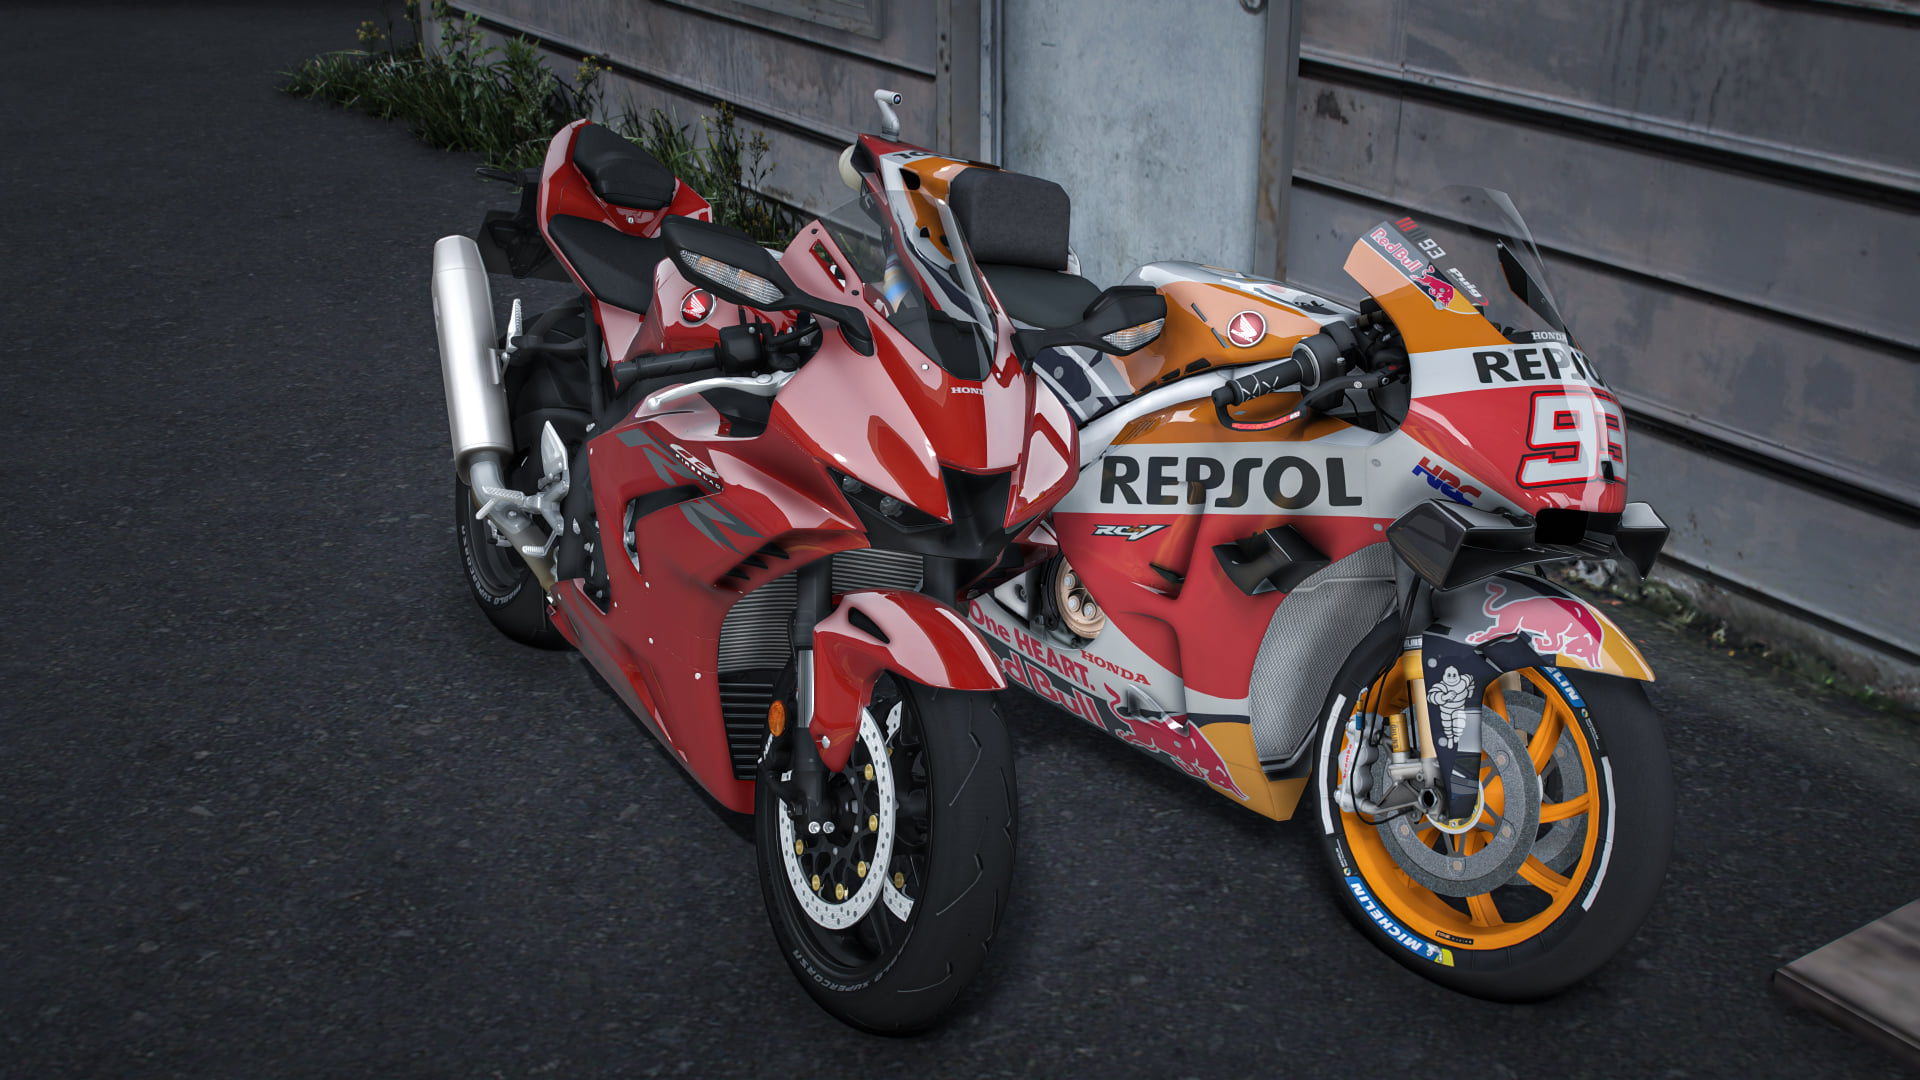 2020 Repsol Honda Team (RC213V) [Add-On] 1.0